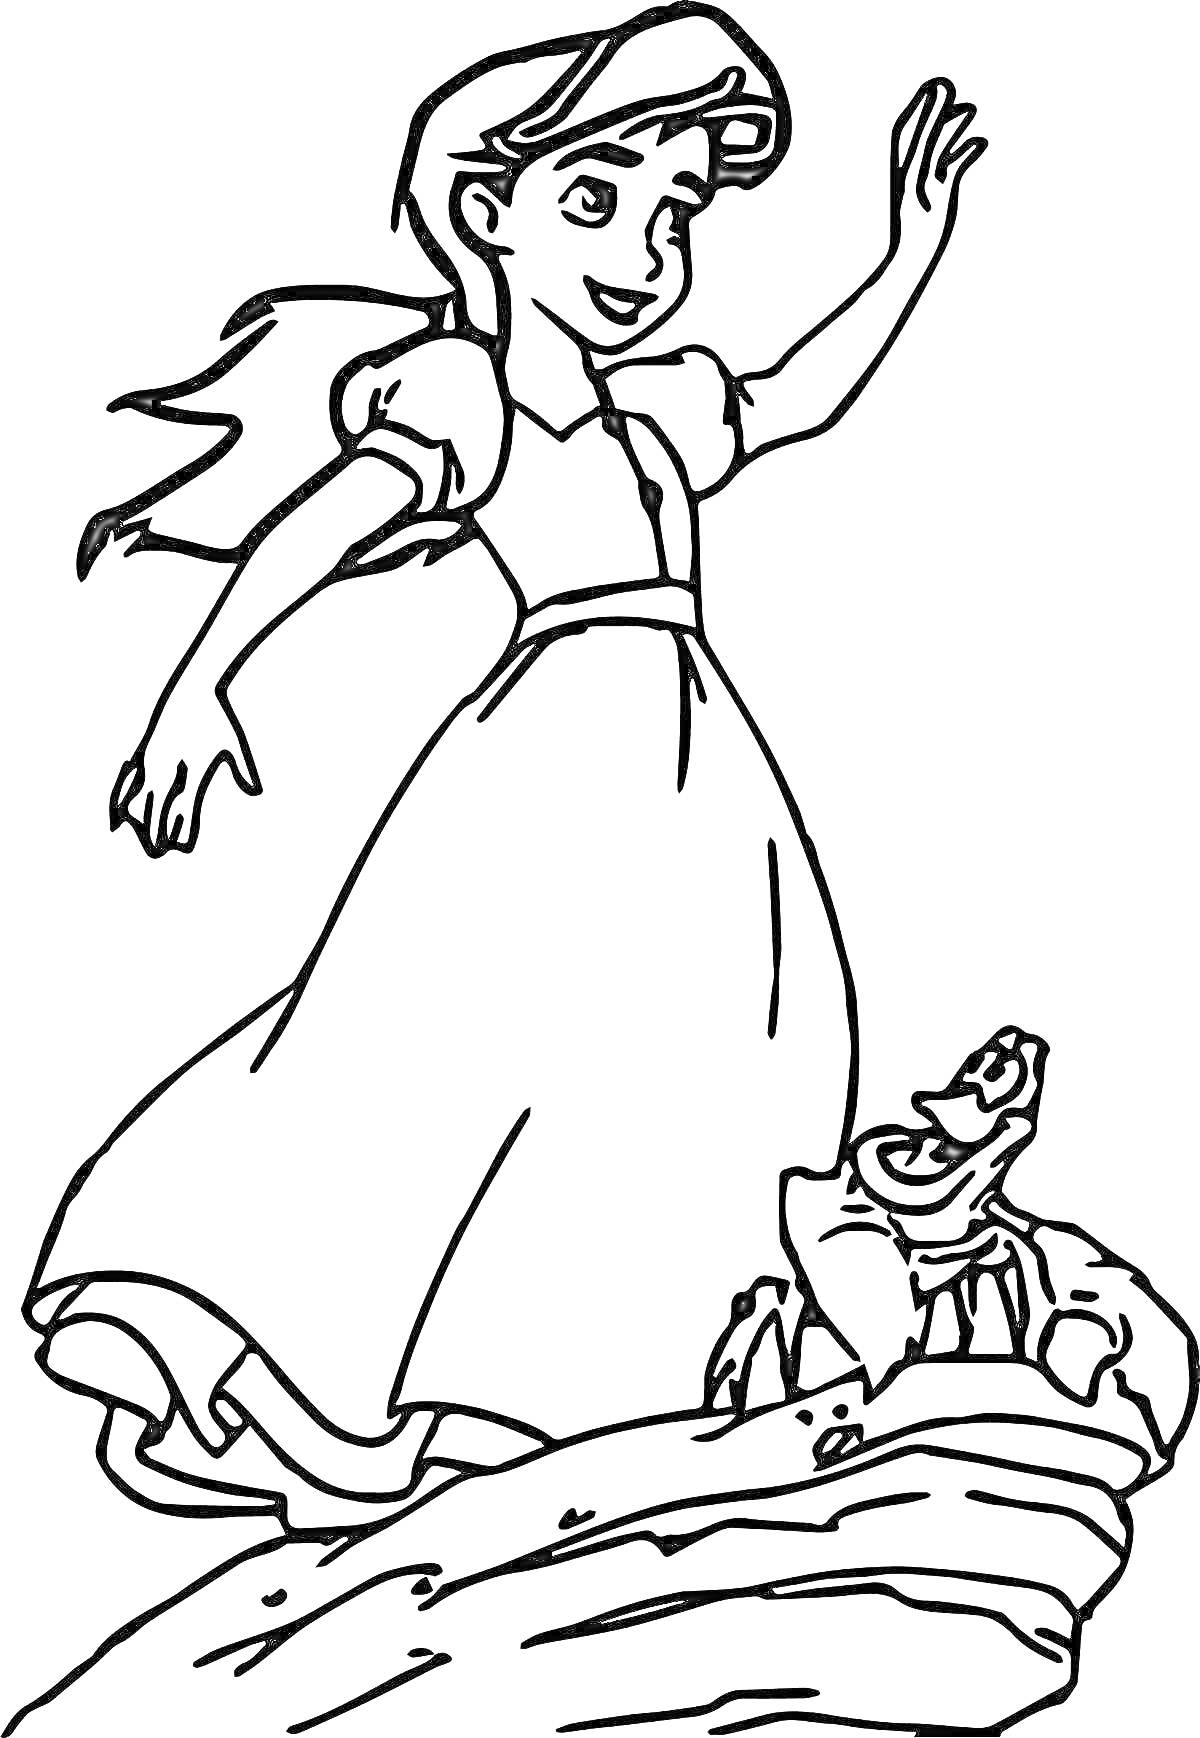 Девушка в длинном платье с распущенными волосами и черепаха на камне